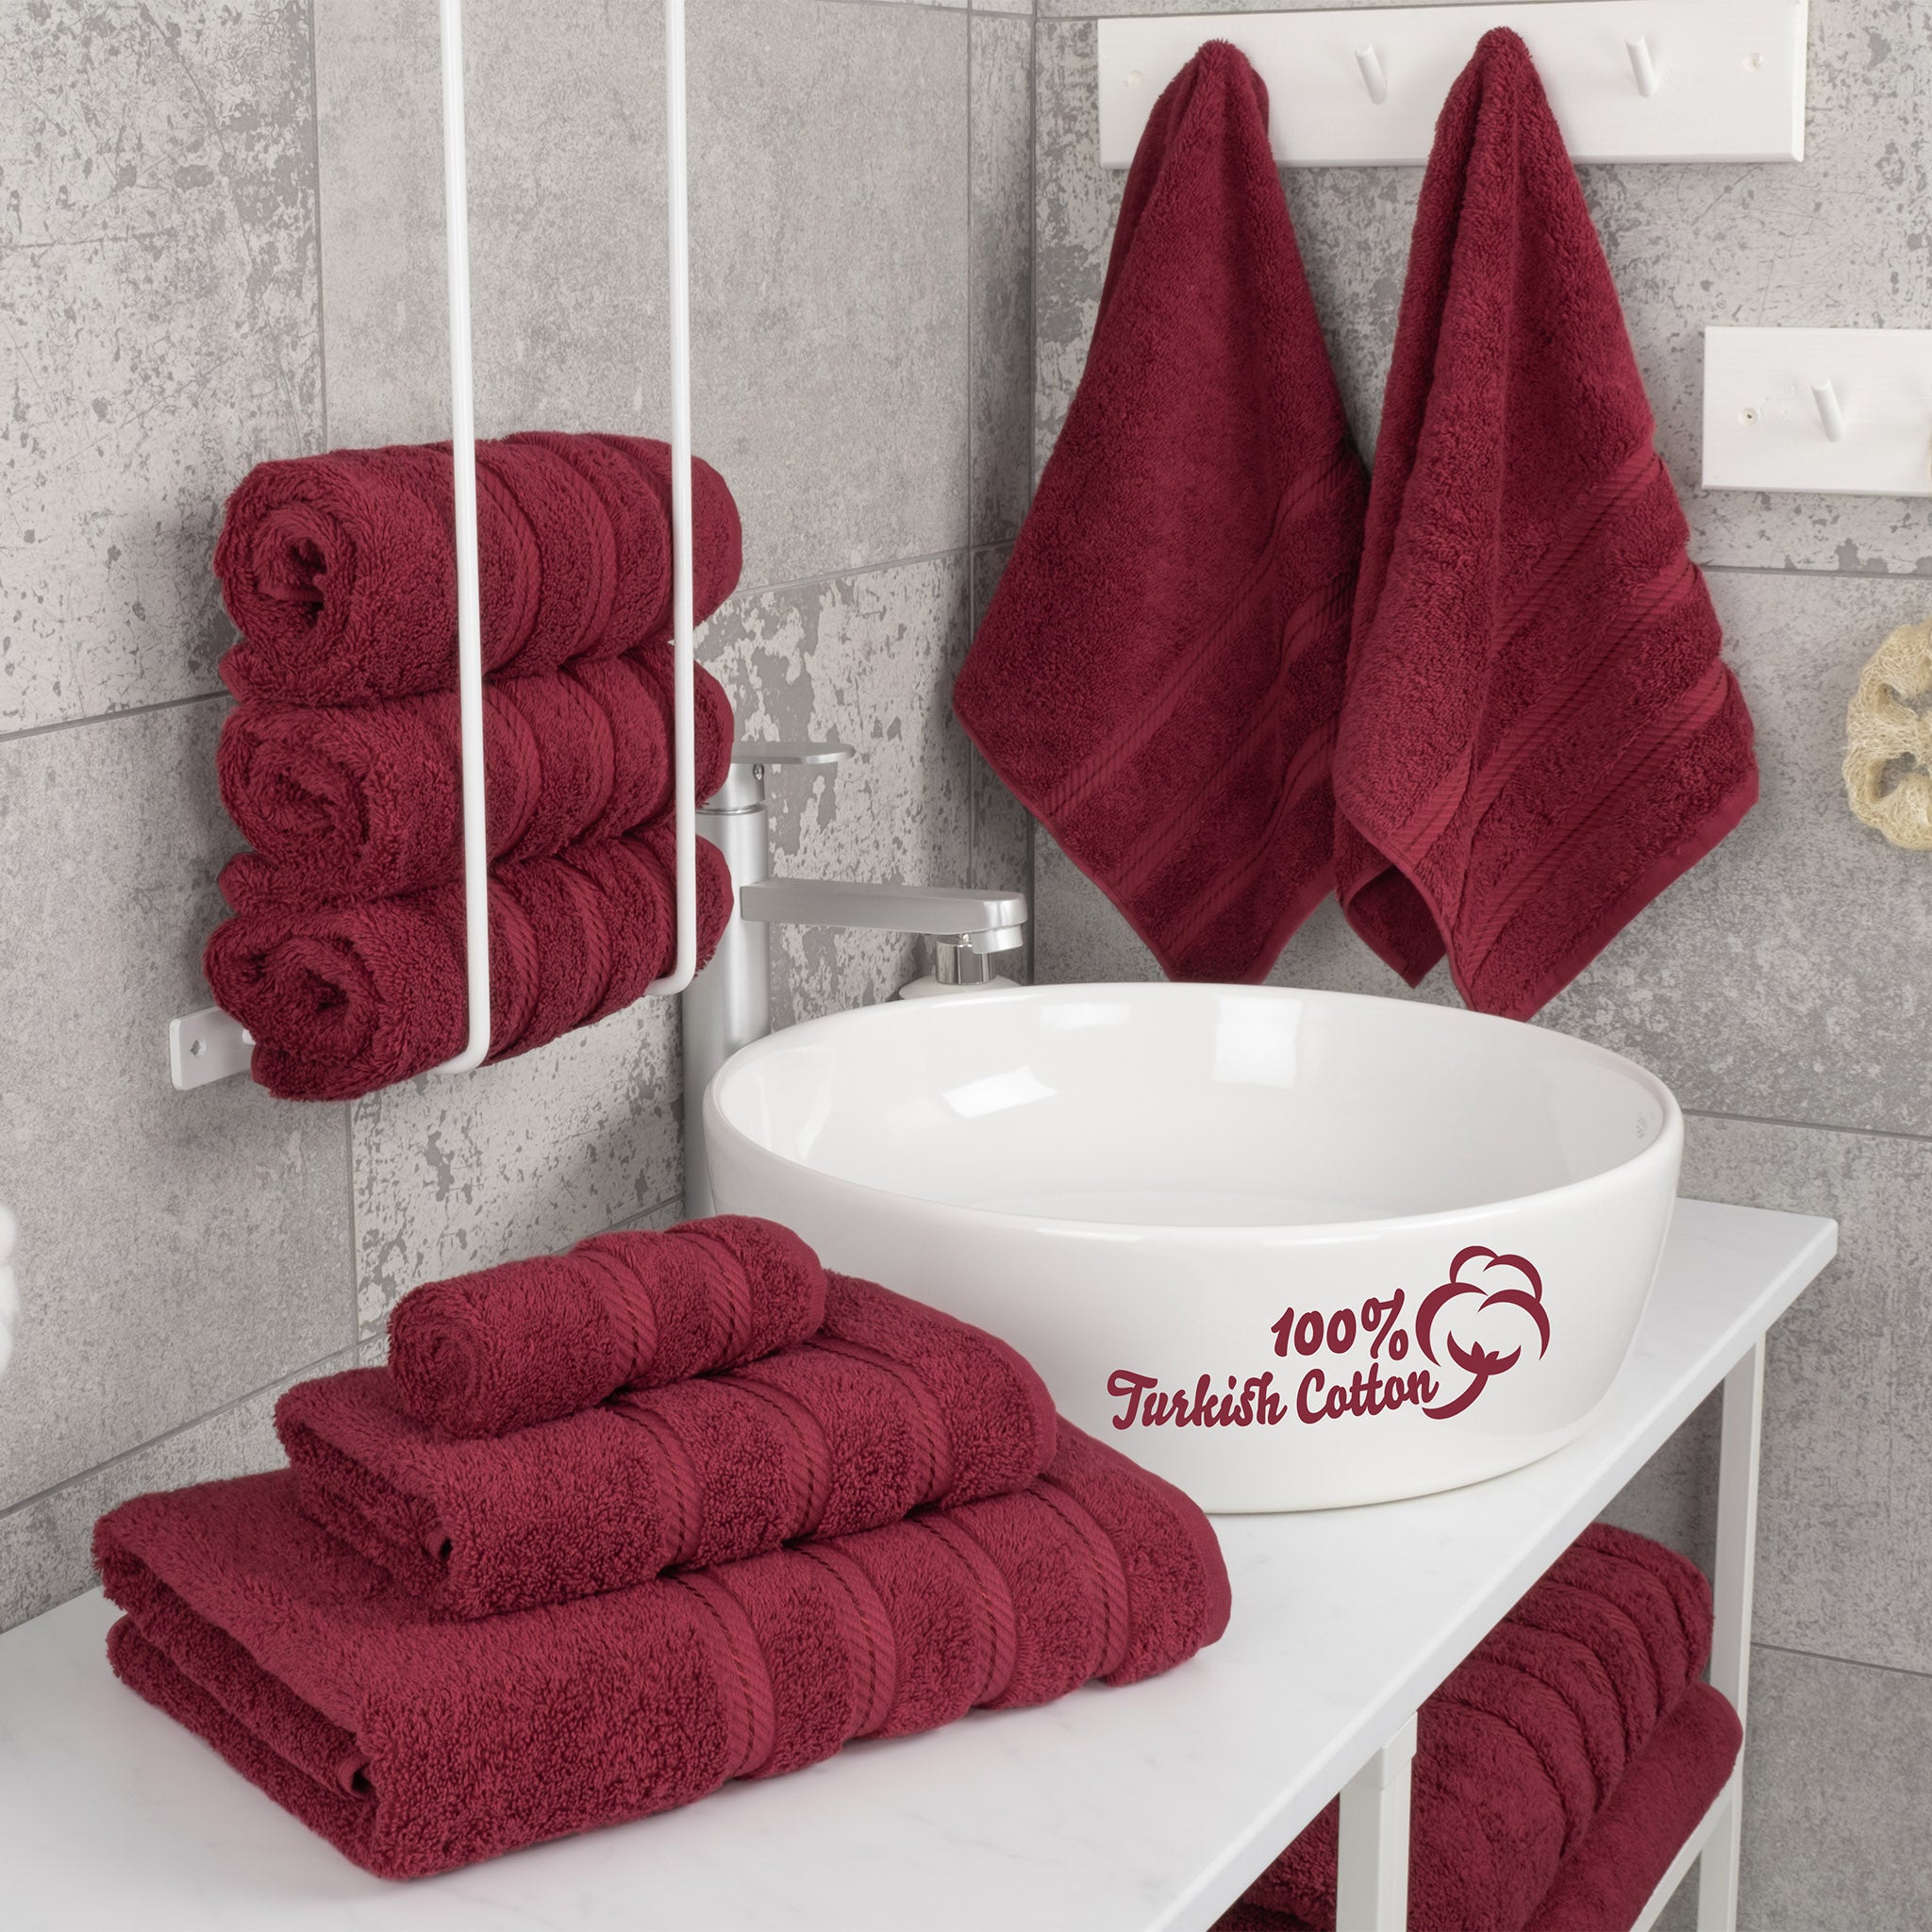 American Soft Linen 100% Turkish Cotton 6 Piece Towel Set Wholesale bordeaux-red-2